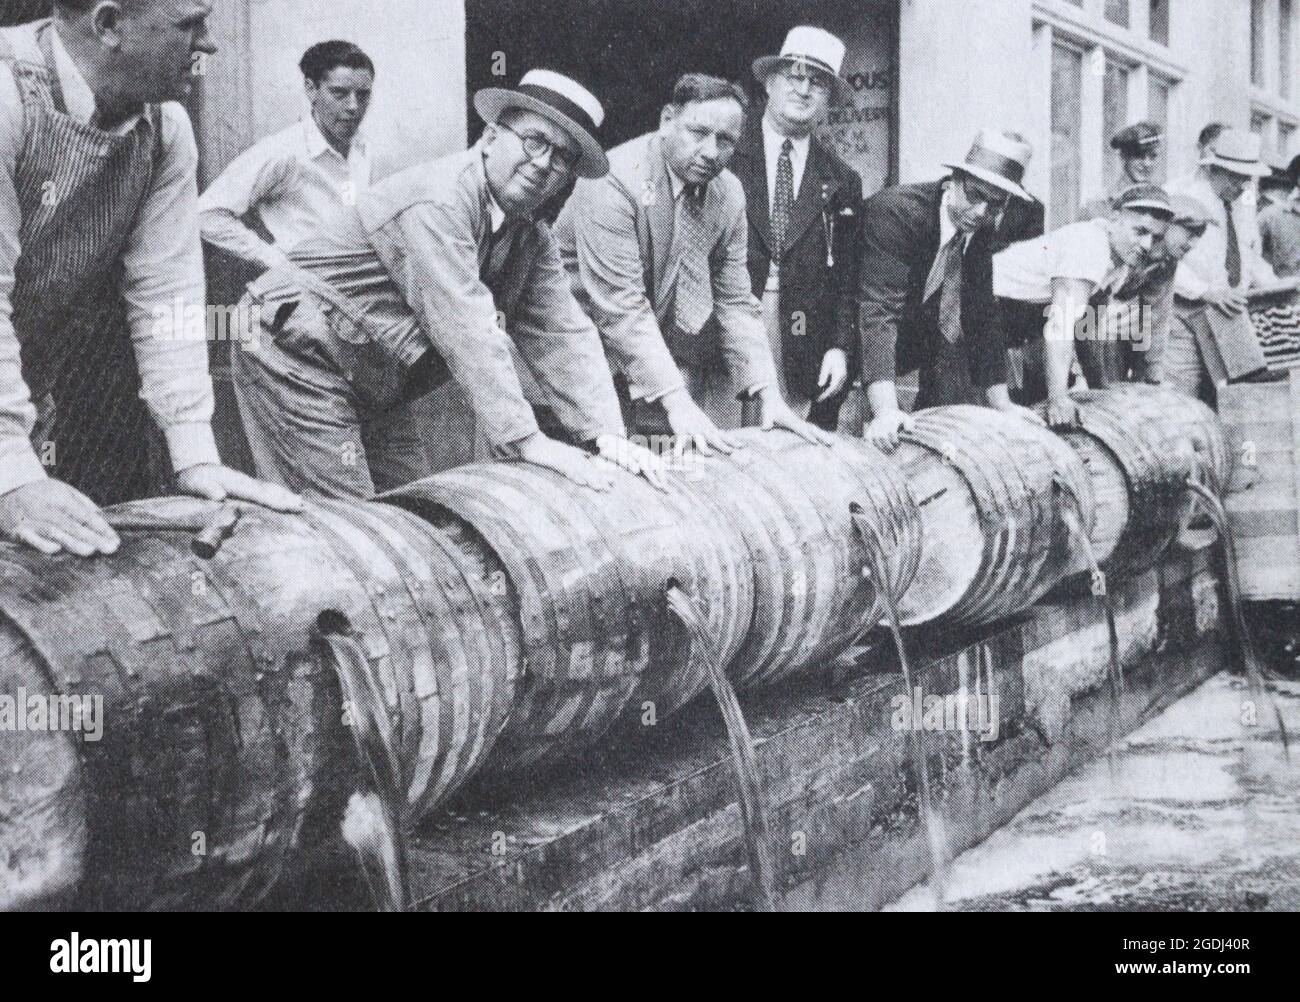 Zerstörung von Whiskey-Beständen in den Vereinigten Staaten während des Prohibition in den 1920er Jahren. Stockfoto